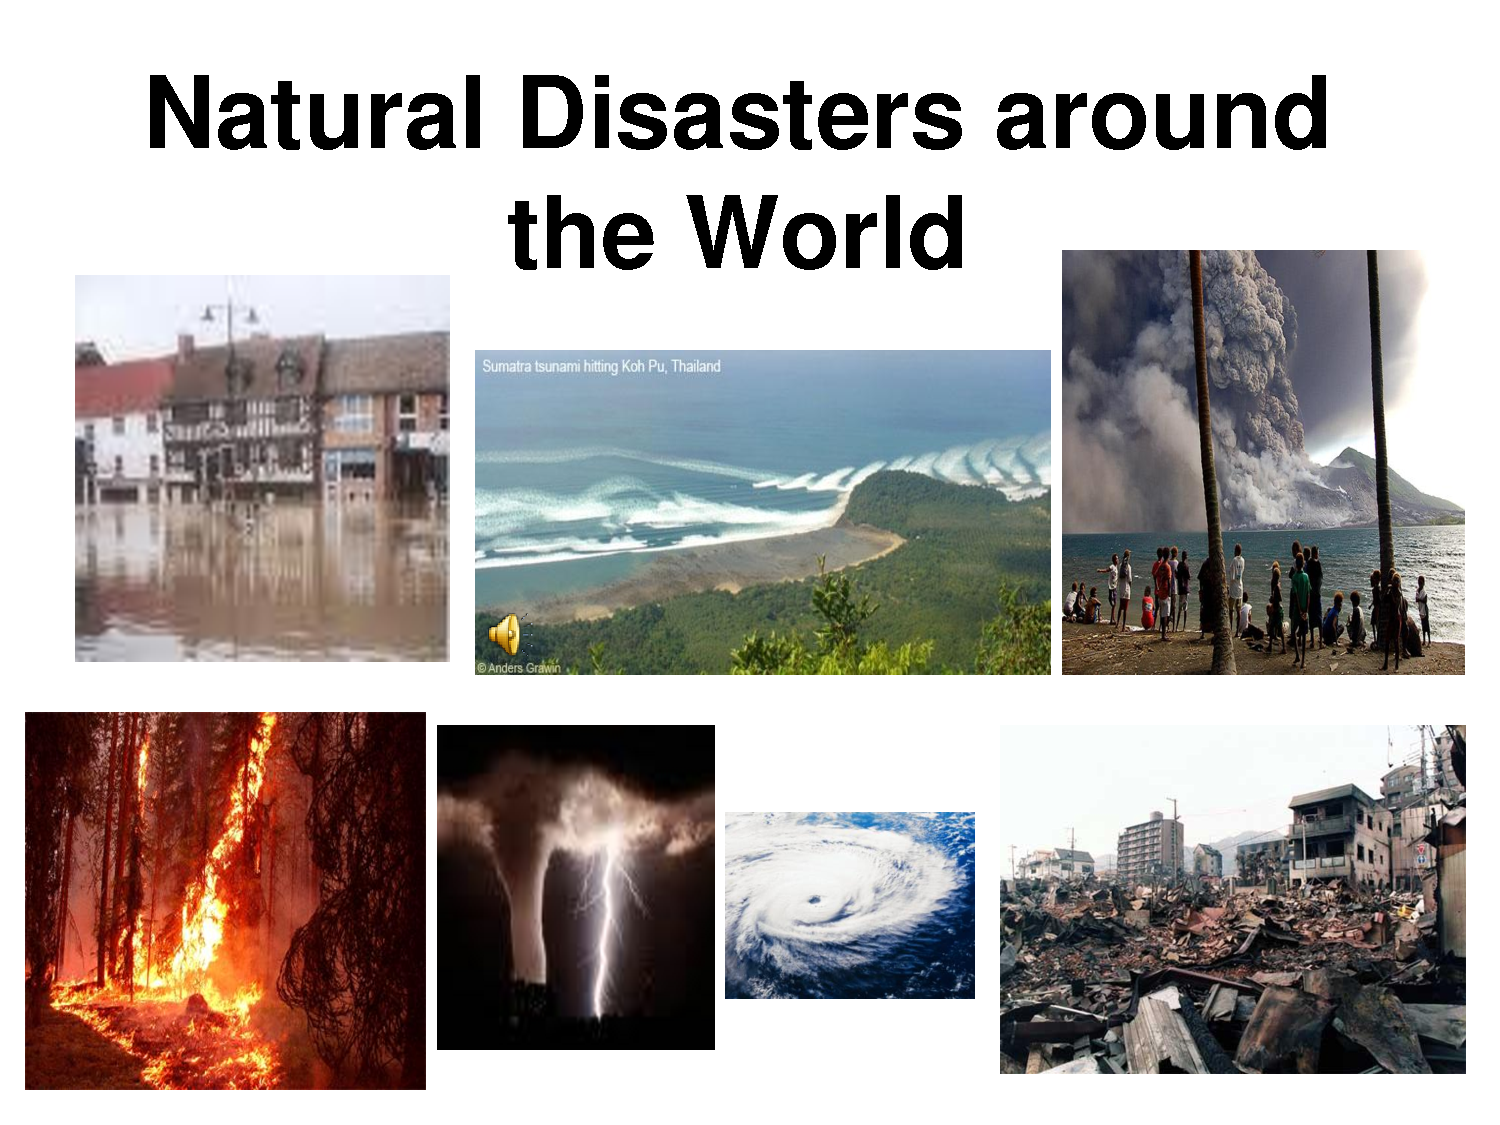 Wordwall disasters. Природные бедствия. Стихийные бедствия и катастрофы. Стихийные бедствия на английском. Стихийные бедствия и человек.